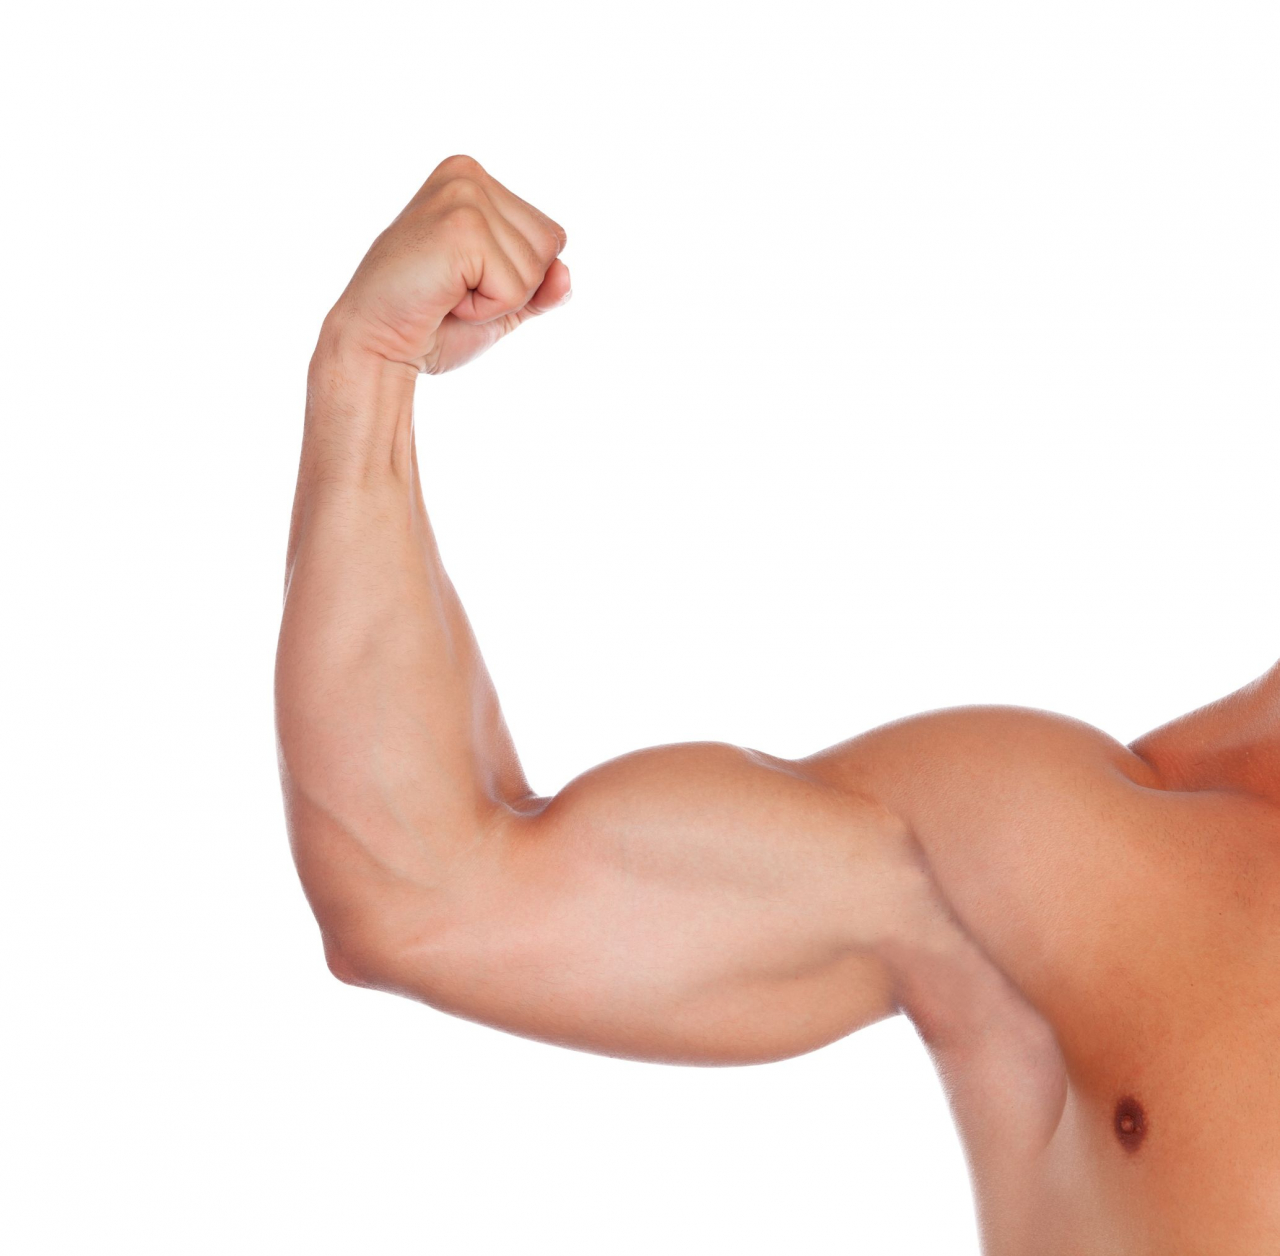 肌肉是身體十分重要的組織，有助身體減重、提升免疫力